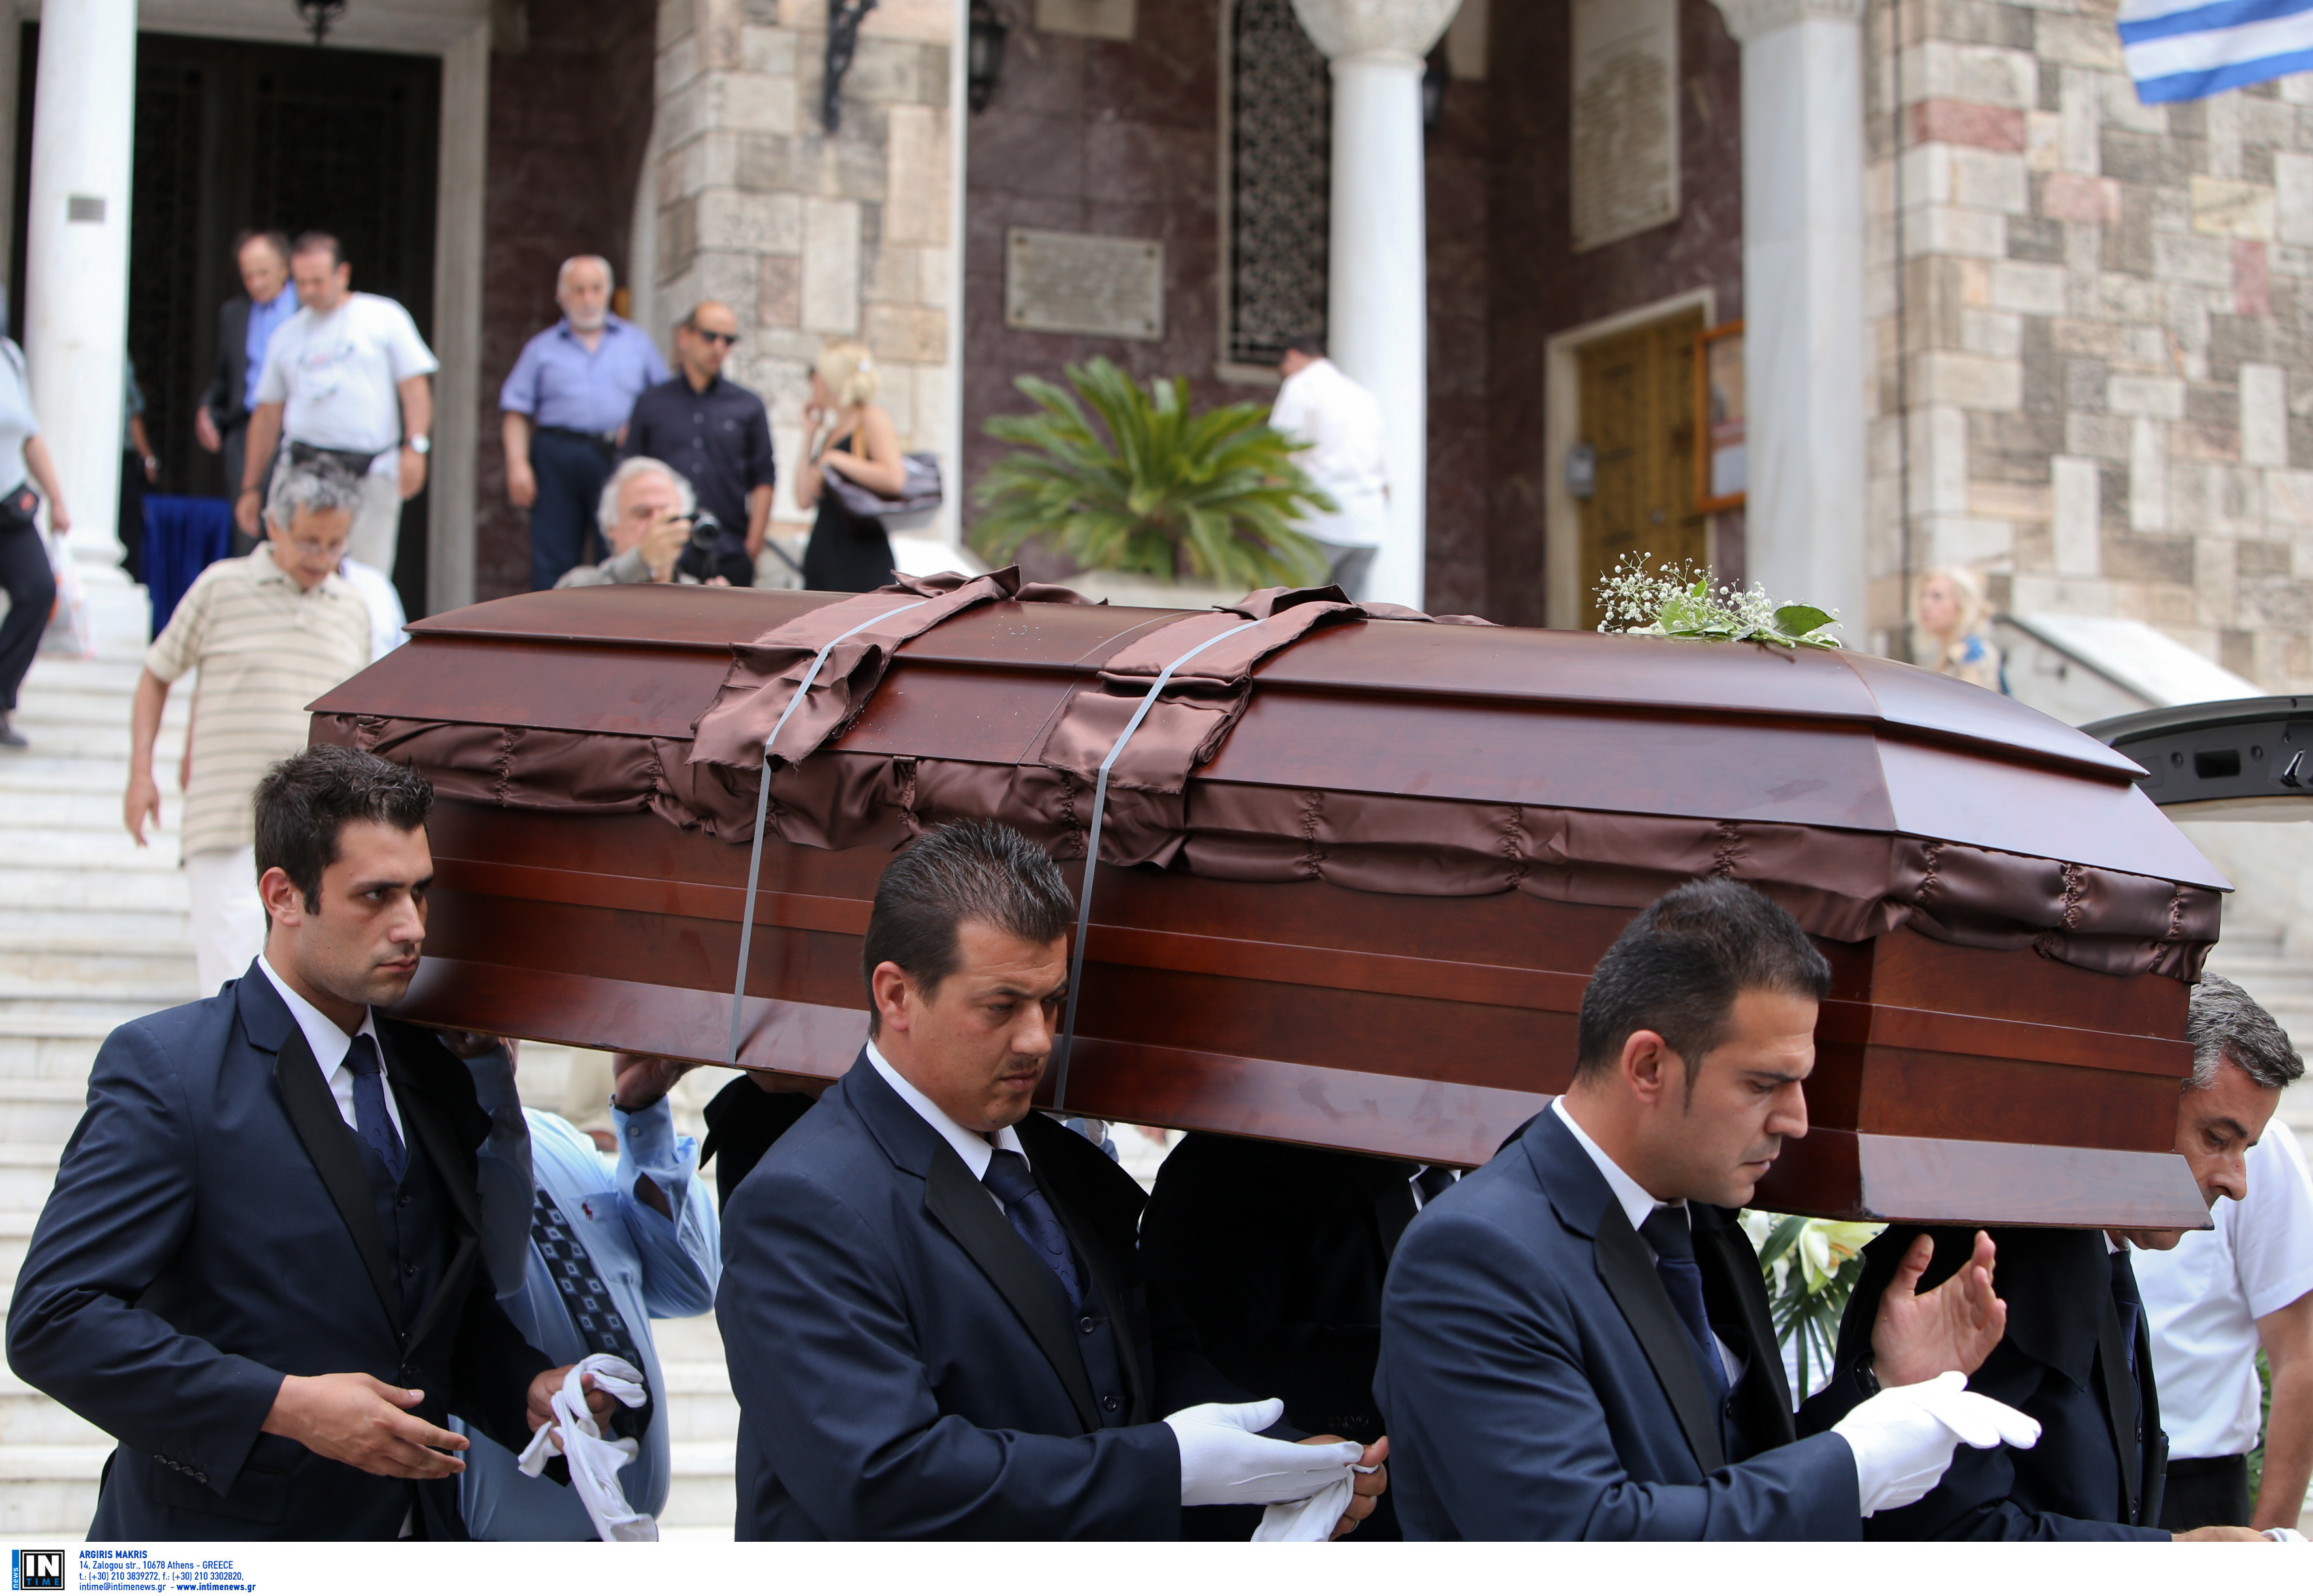 Ηράκλειο: Άνοιξαν το φέρετρο και “πάγωσαν” – Διακόπηκε η κηδεία – Πρωτοφανείς σκηνές στην εκκλησία!